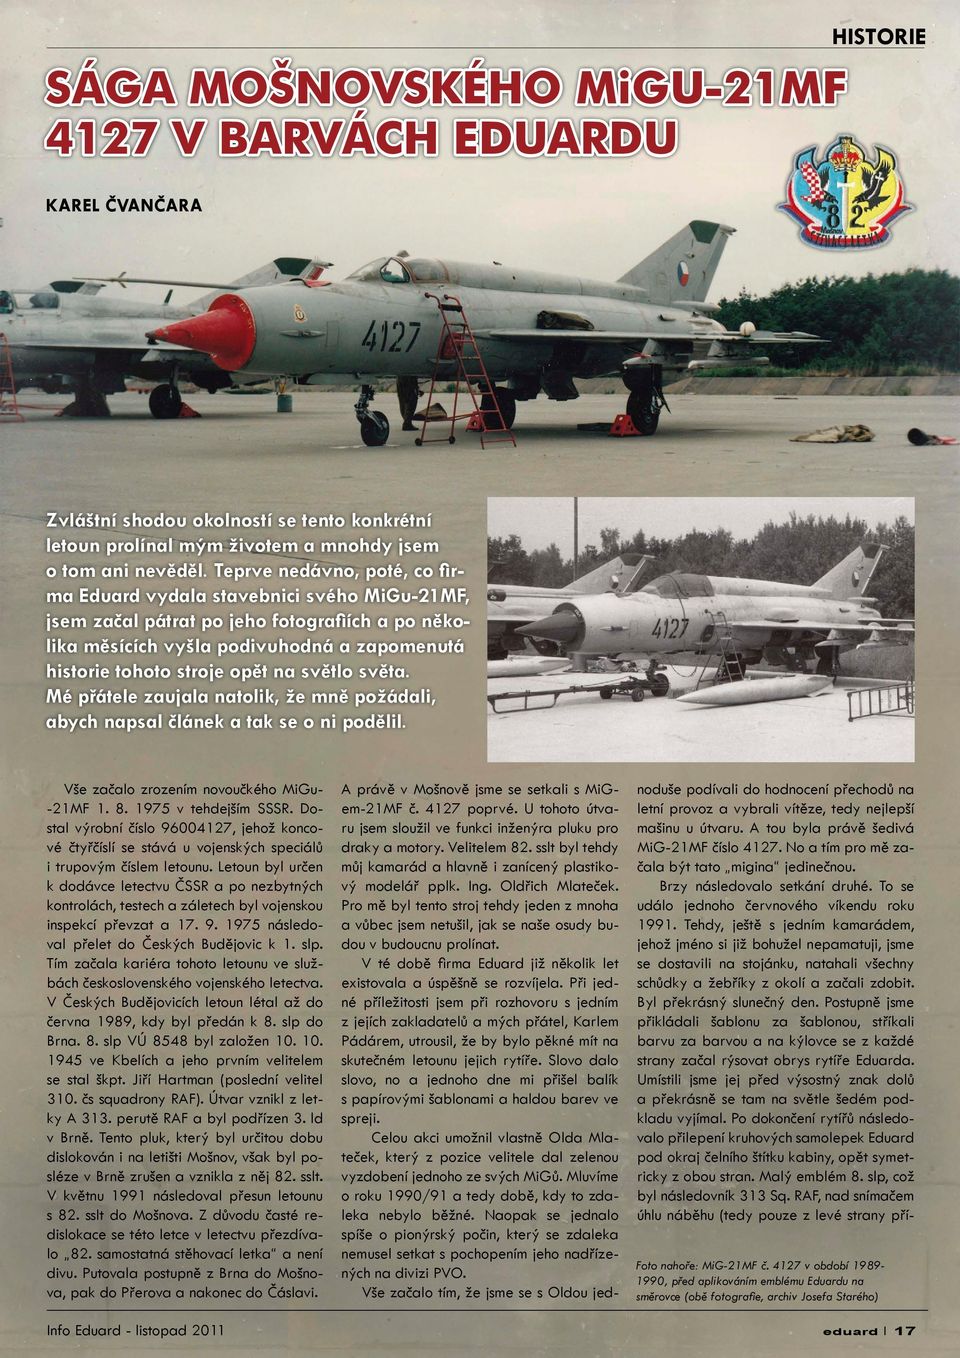 světlo světa. Mé přátele zaujala natolik, že mně požádali, abych napsal článek a tak se o ni podělil. Vše začalo zrozením novoučkého MiGu- -21MF 1. 8. 1975 v tehdejším SSSR.